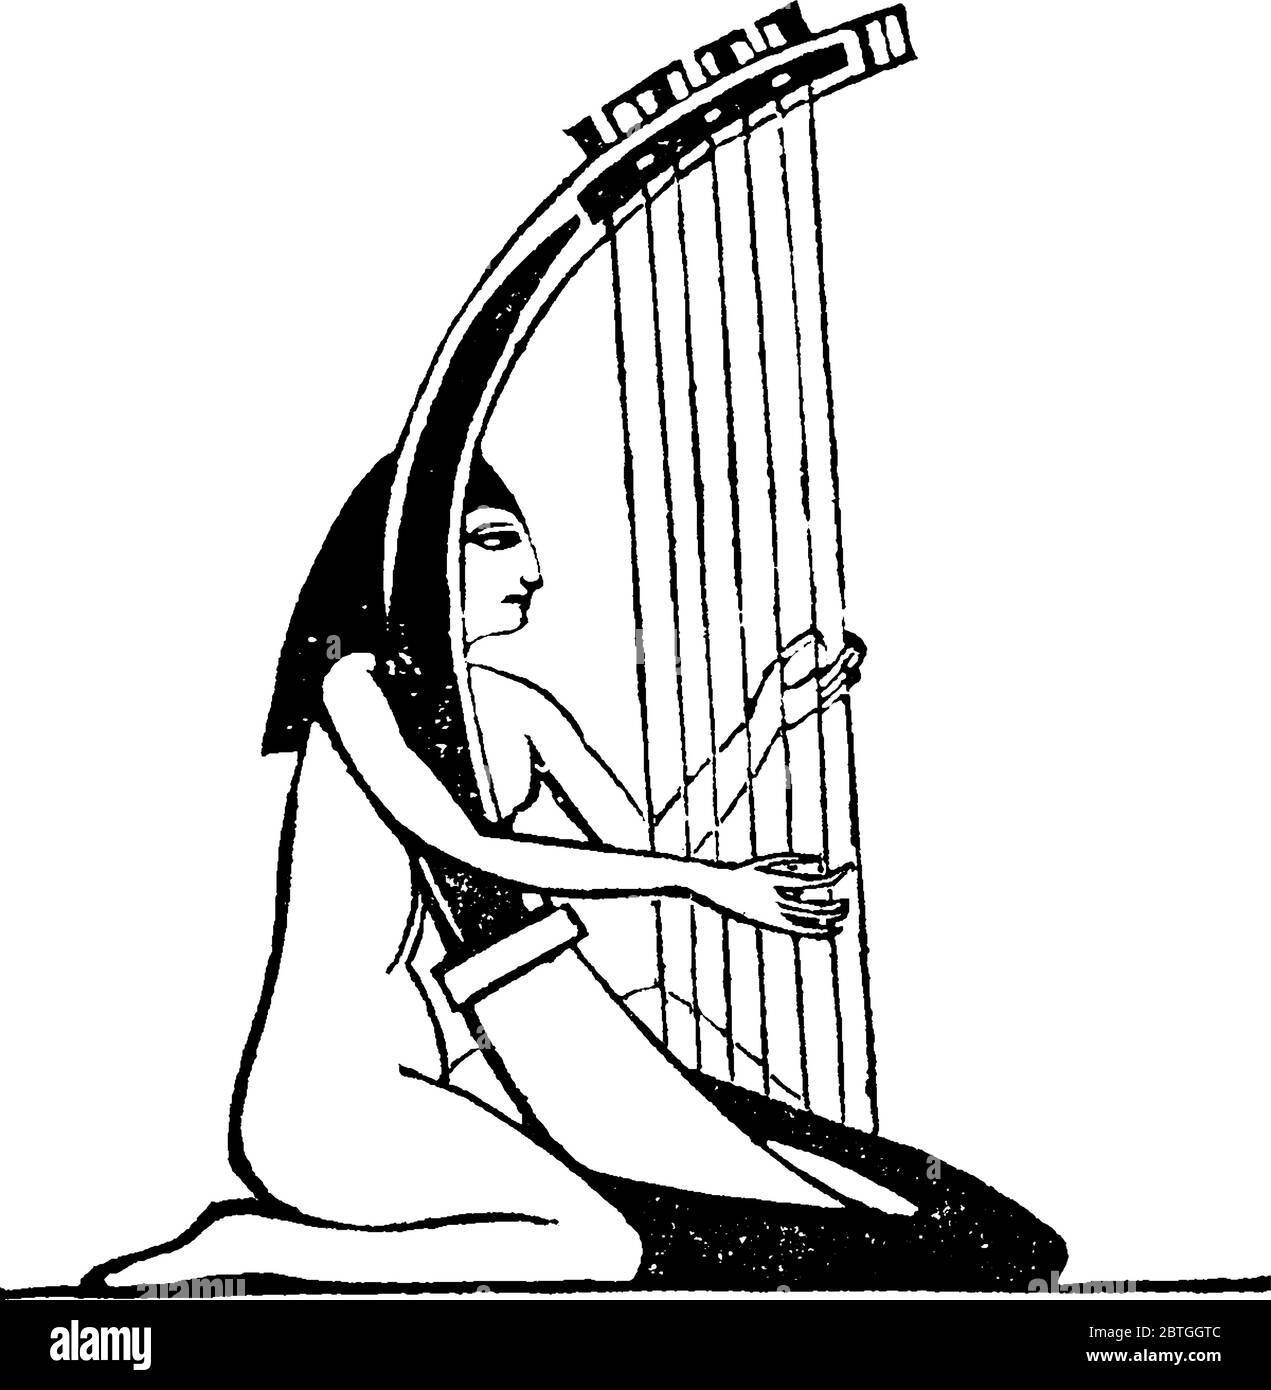 Harpe, avec un certain nombre de cordes individuelles qui coudent à un angle de son tableau, que les Égyptiens ont accordé une grande attention à l'étude de la musique et a eu Illustration de Vecteur